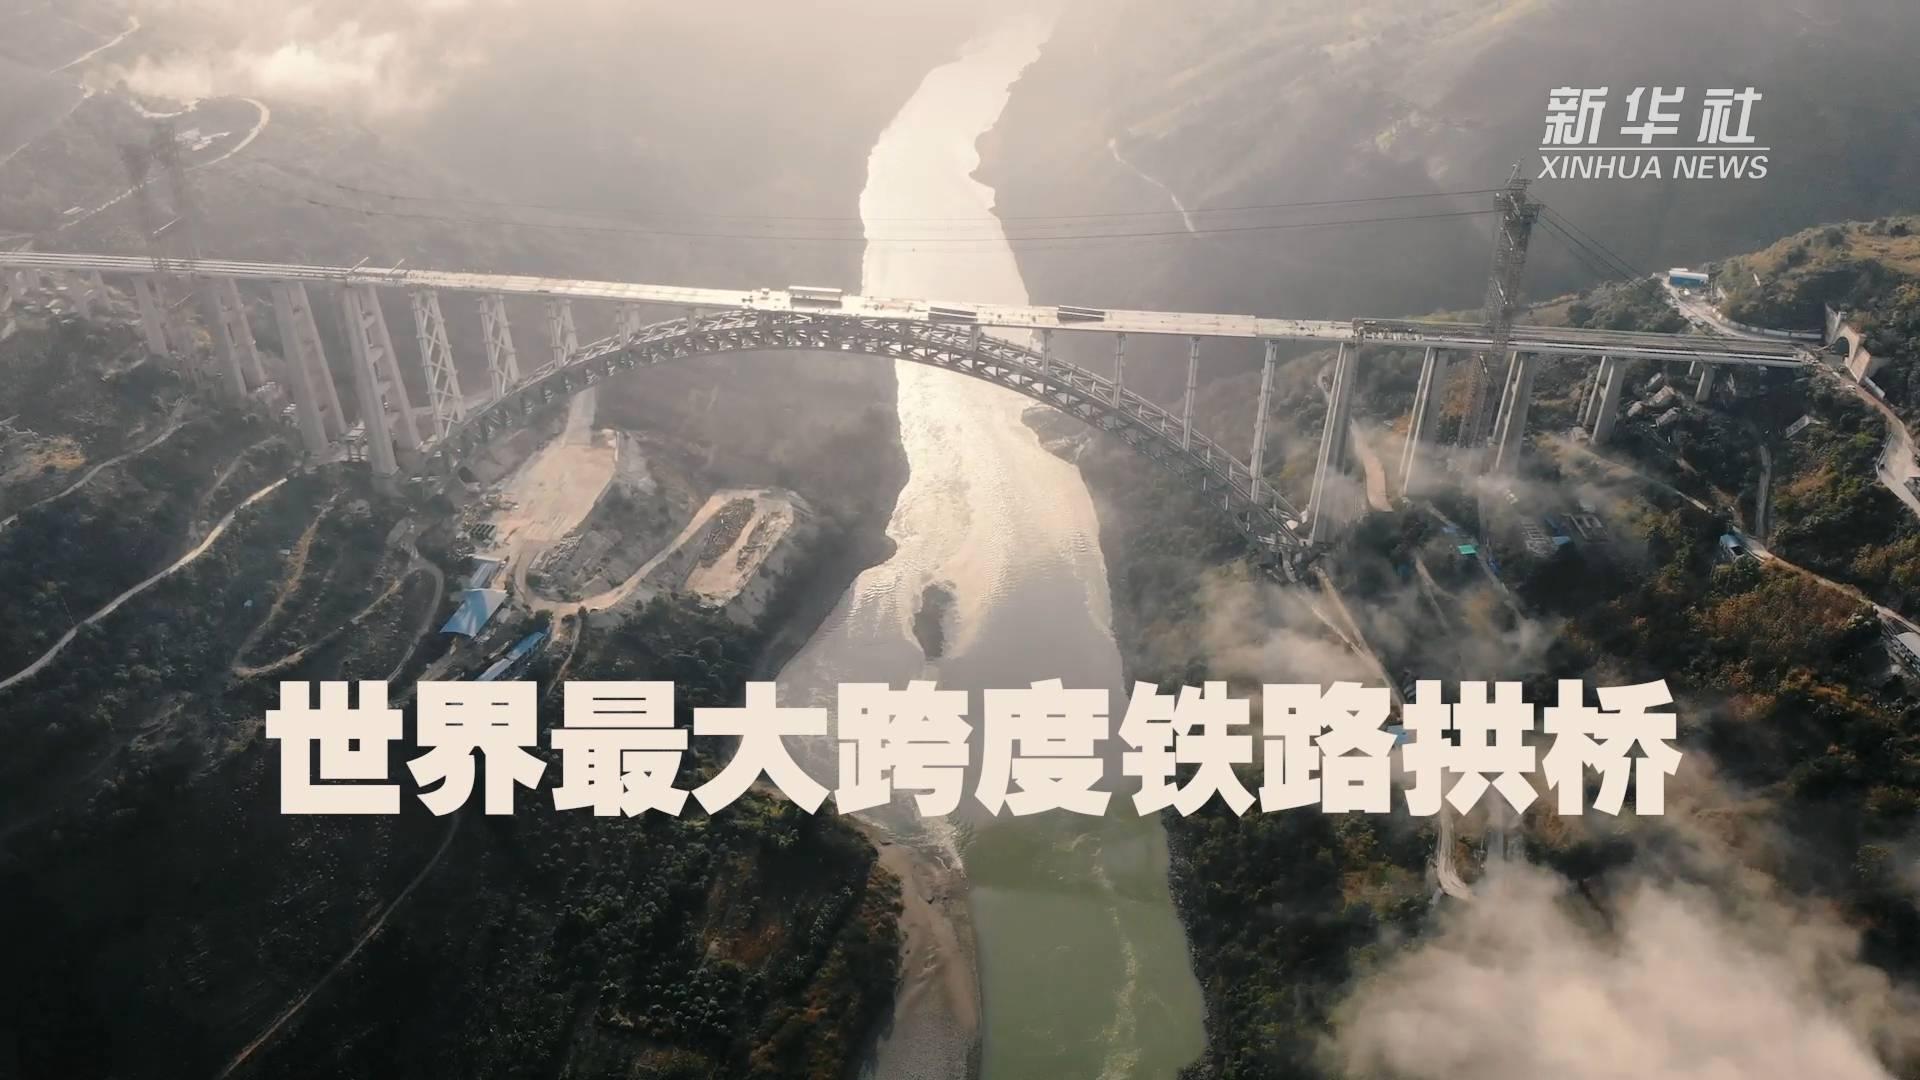 世界最大跨度铁路拱桥——大瑞铁路怒江特大桥主体建成